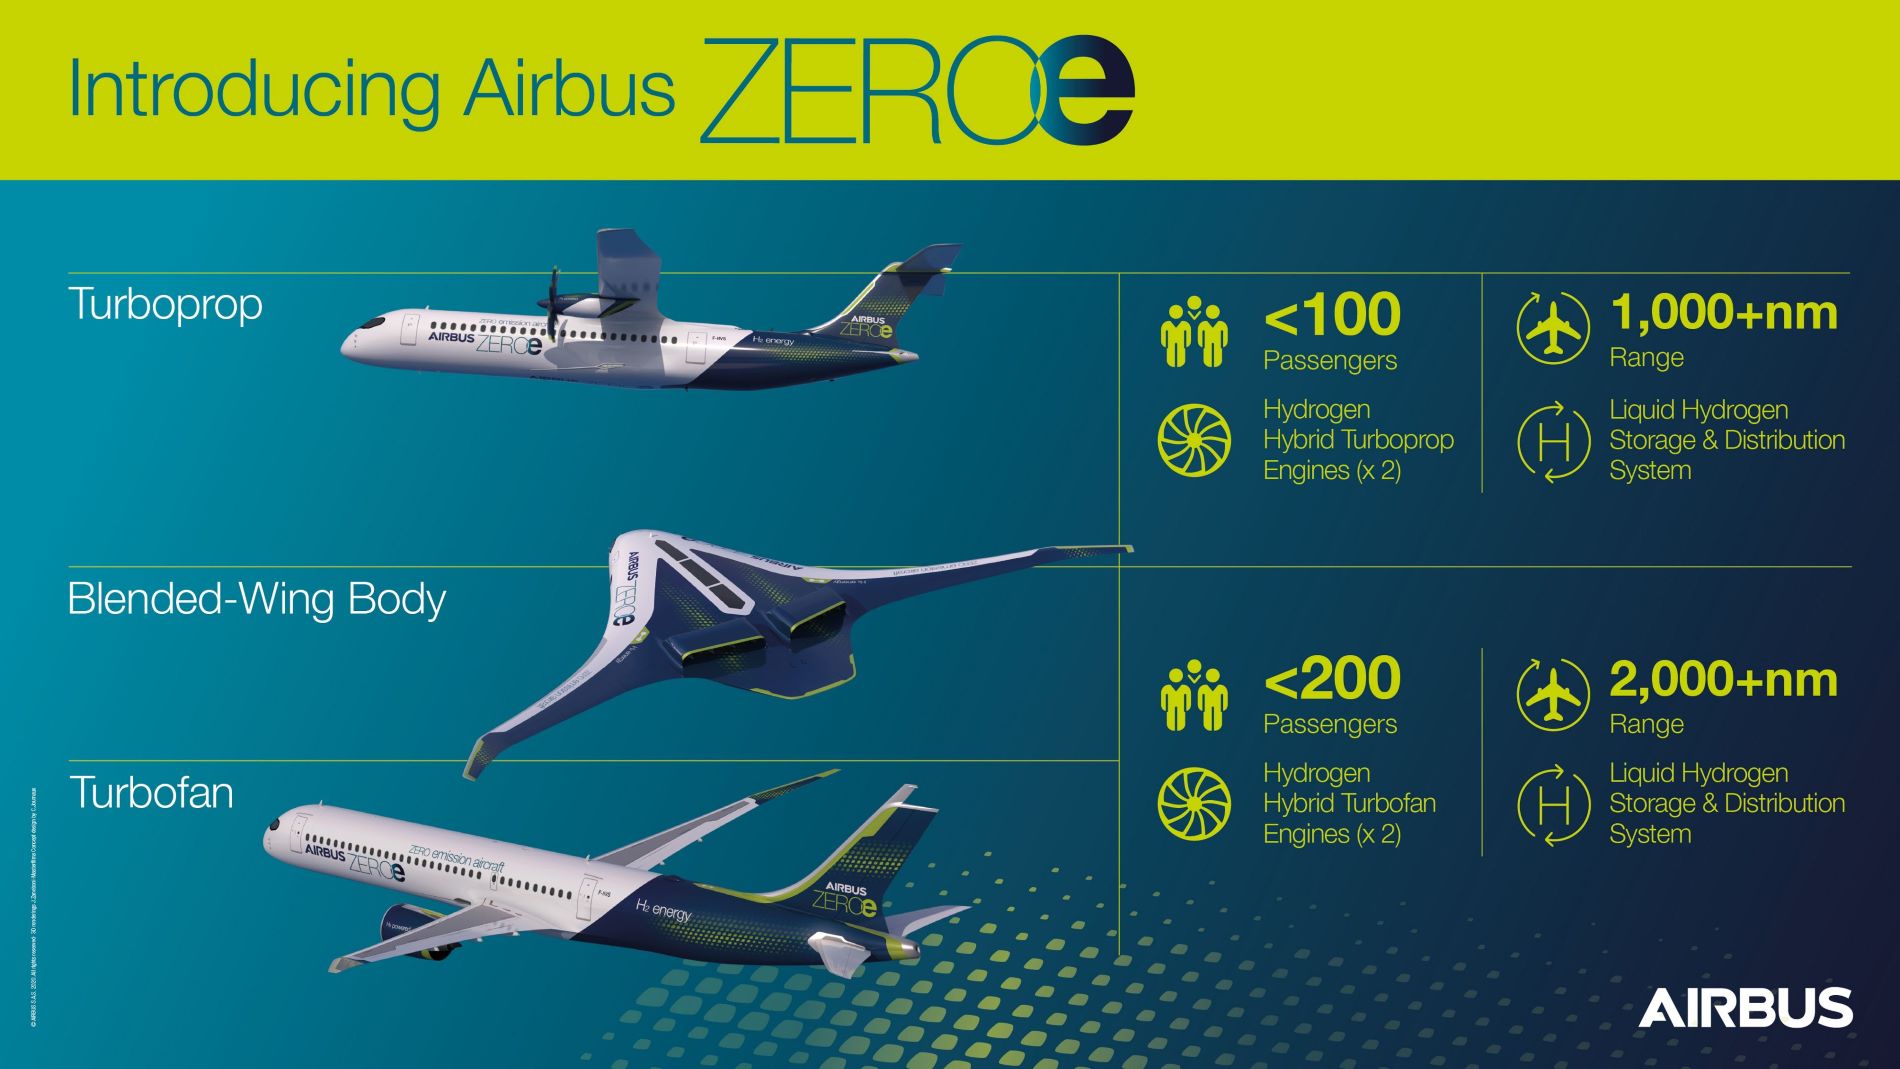 Airbus Zeroe Concepts Description